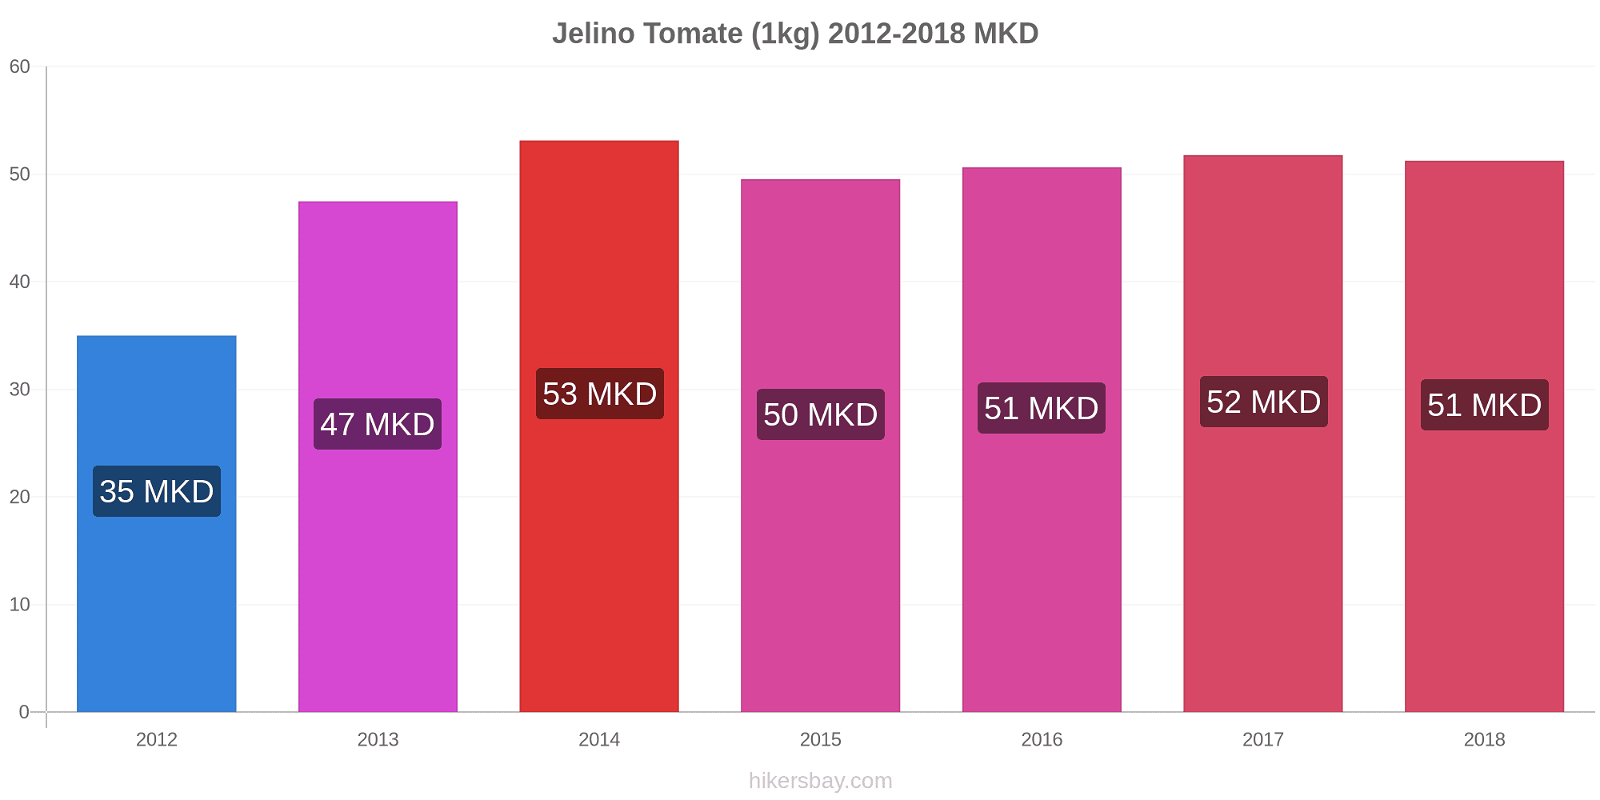 Jelino changements de prix Tomate (1kg) hikersbay.com